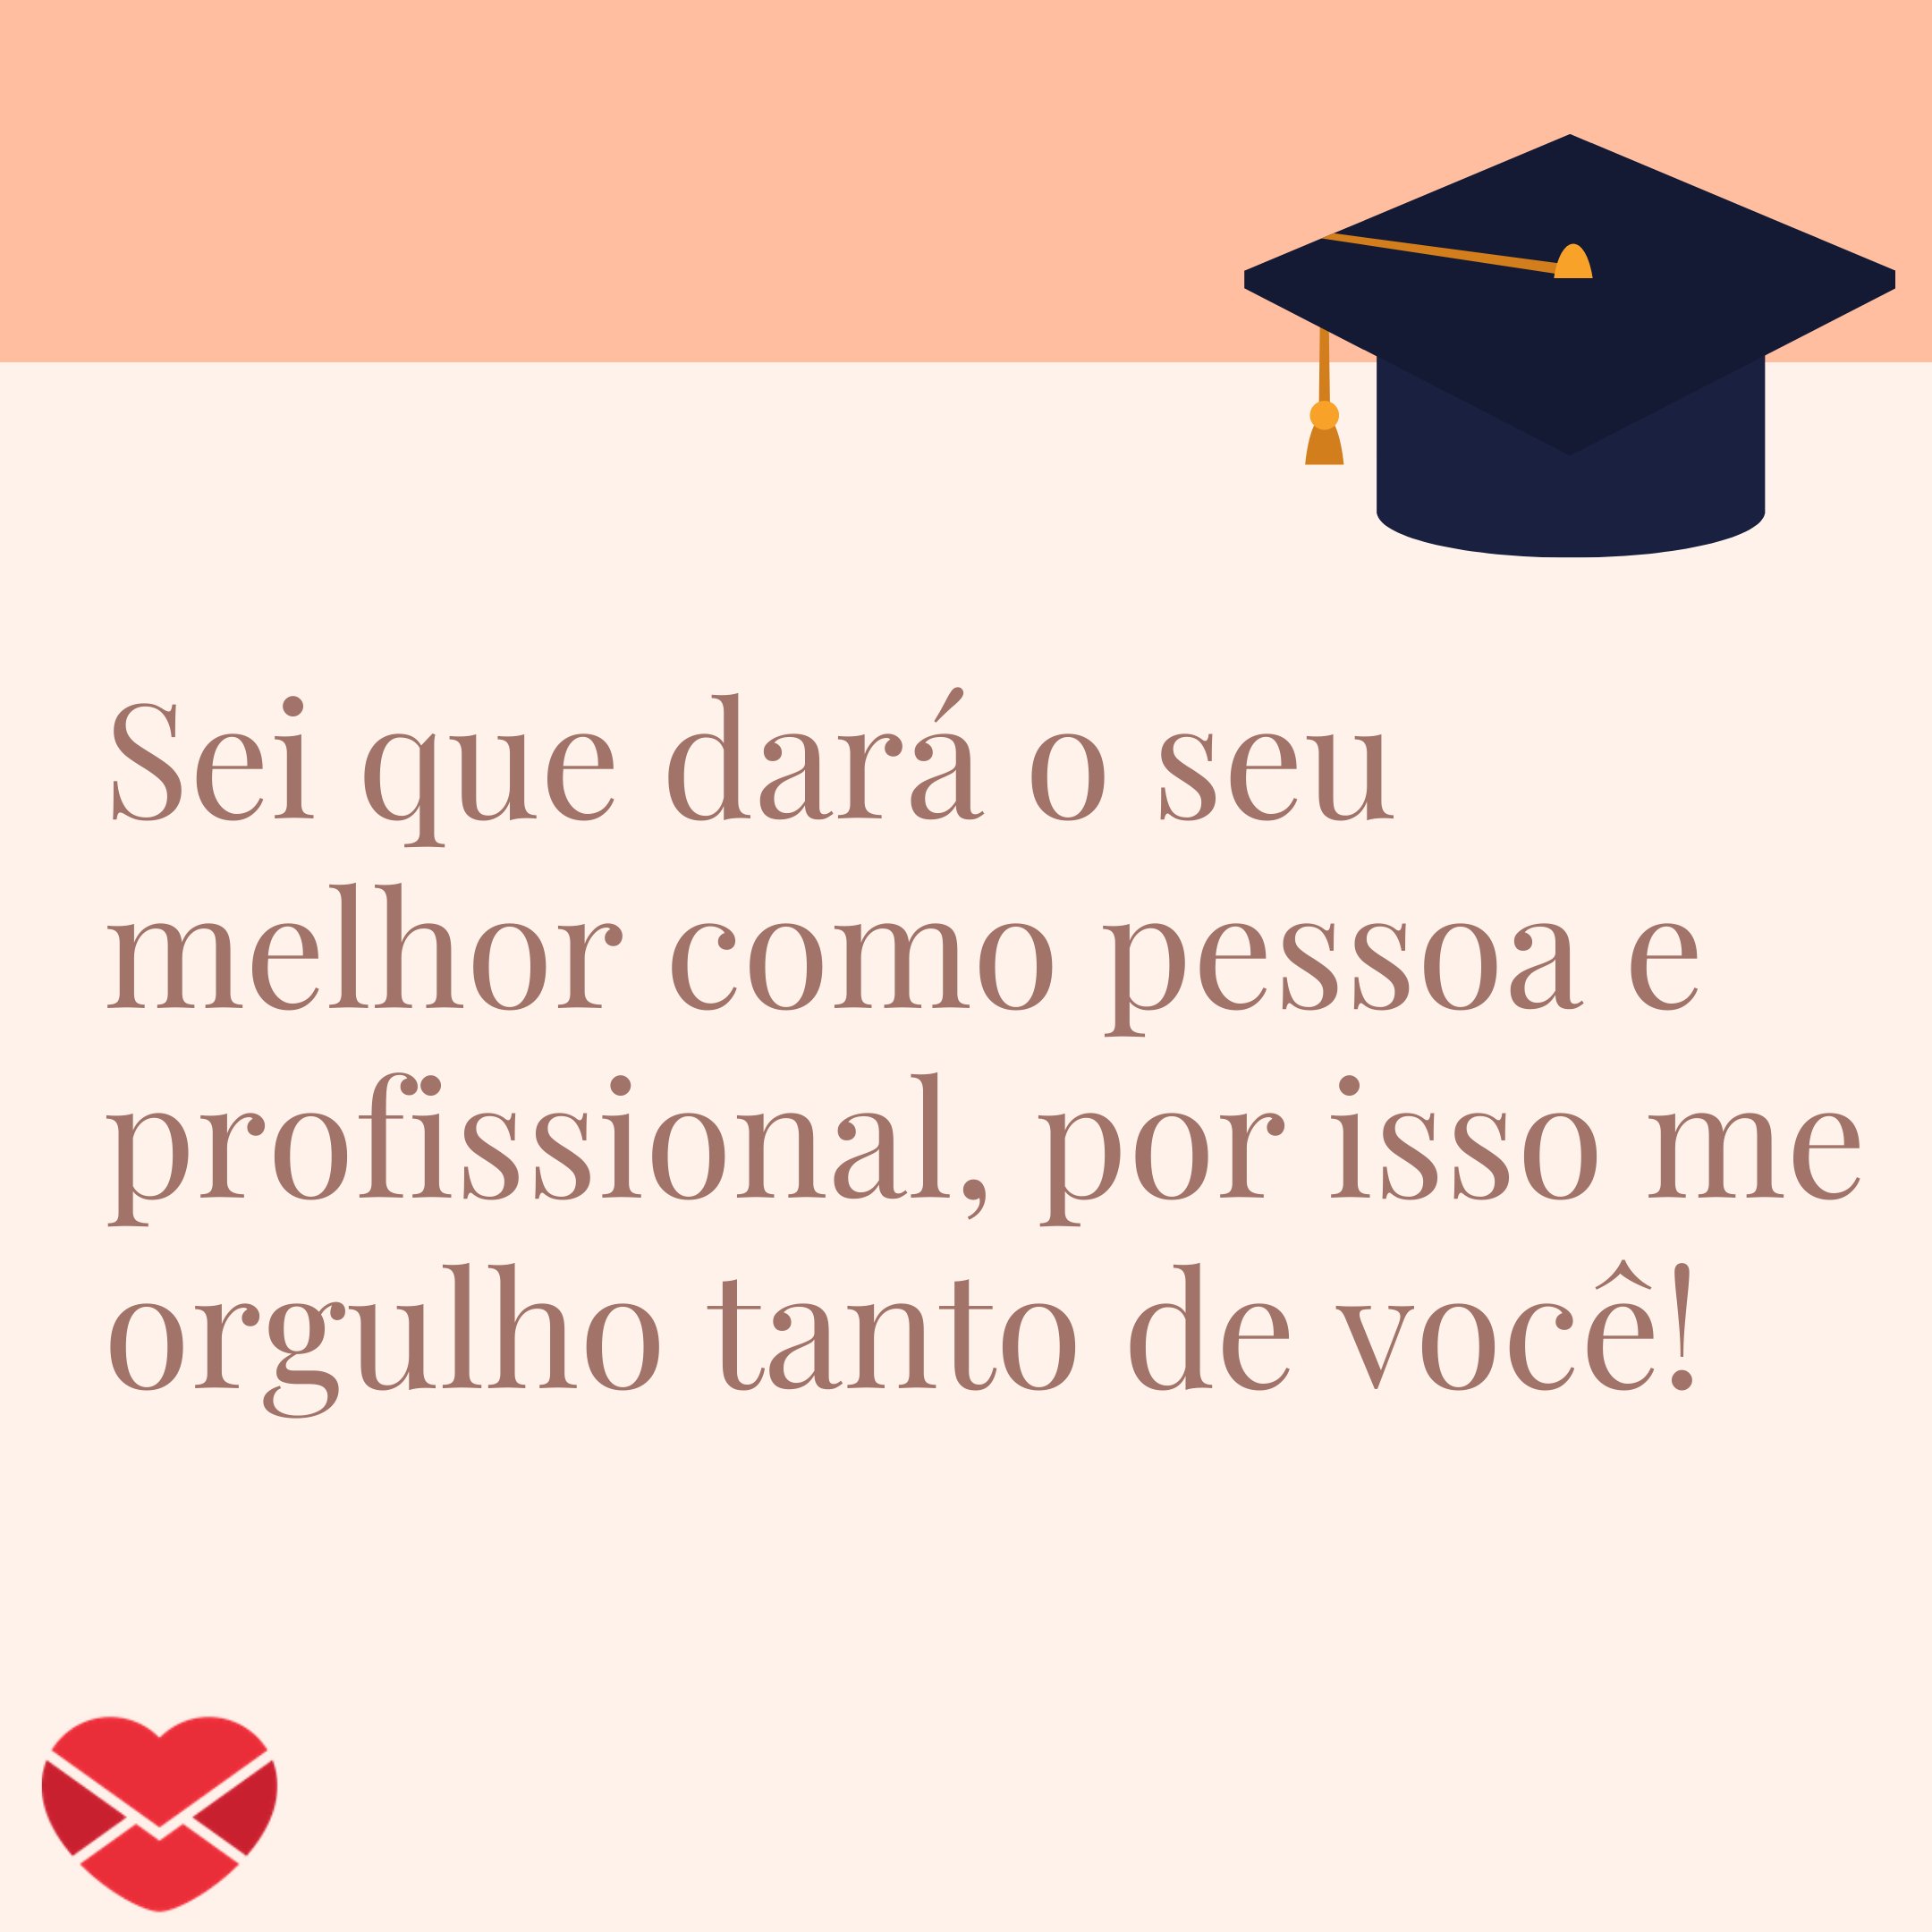 'Sei que dará o seu melhor como pessoa e profissional, por isso me orgulho tanto de você! '-Mensagem de Parabéns para quem vai se formar em Letras - Língua Portuguesa.